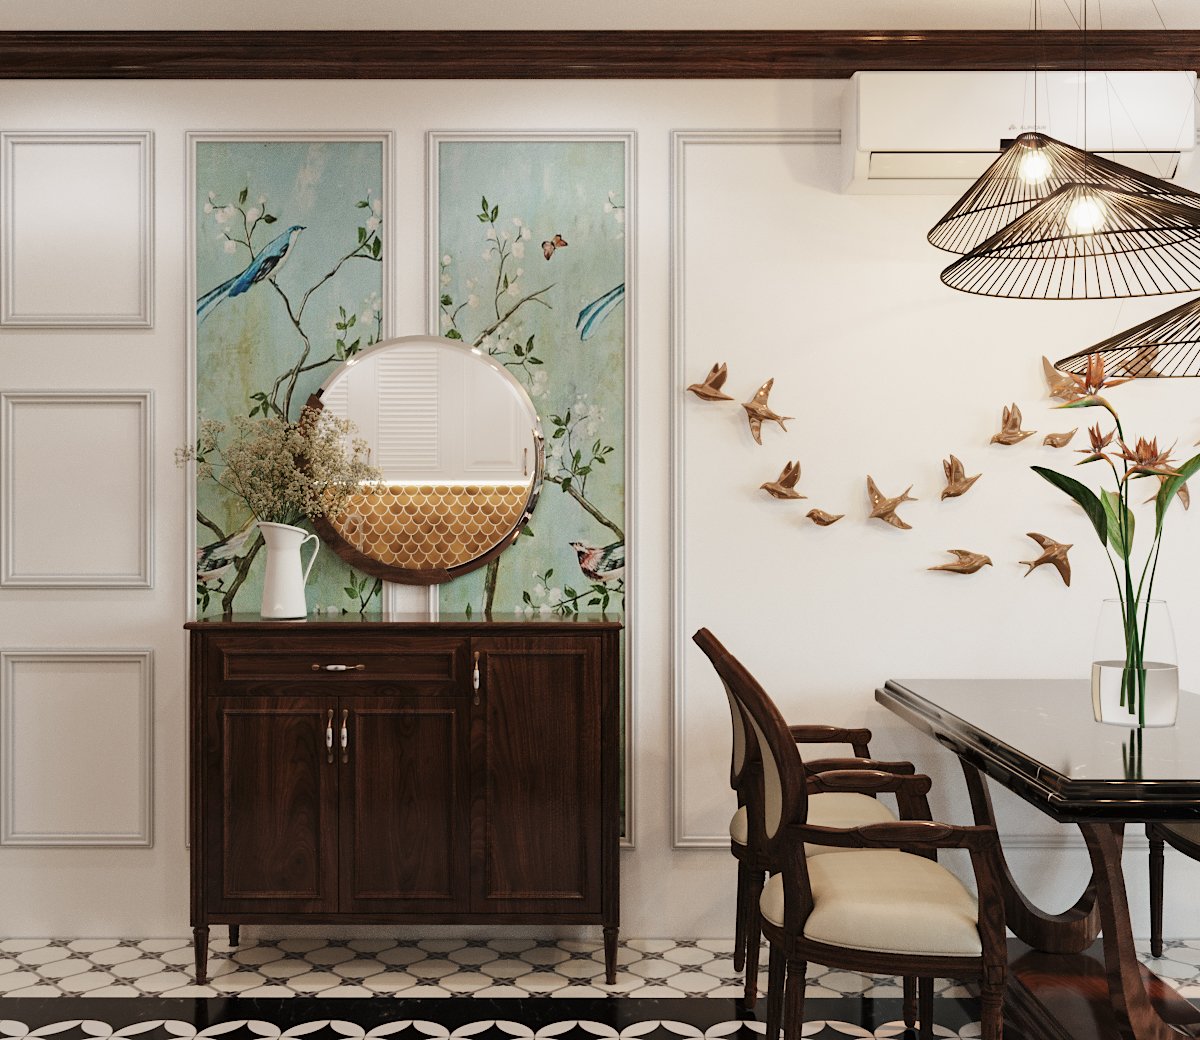 Không gian ăn uống được bài trí tinh tế với điểm nhấn hút mắt từ phụ kiện decor đàn chim bay lượn trên nền tường trắng cùng họa tiết mùa xuân khu vực tủ kệ.